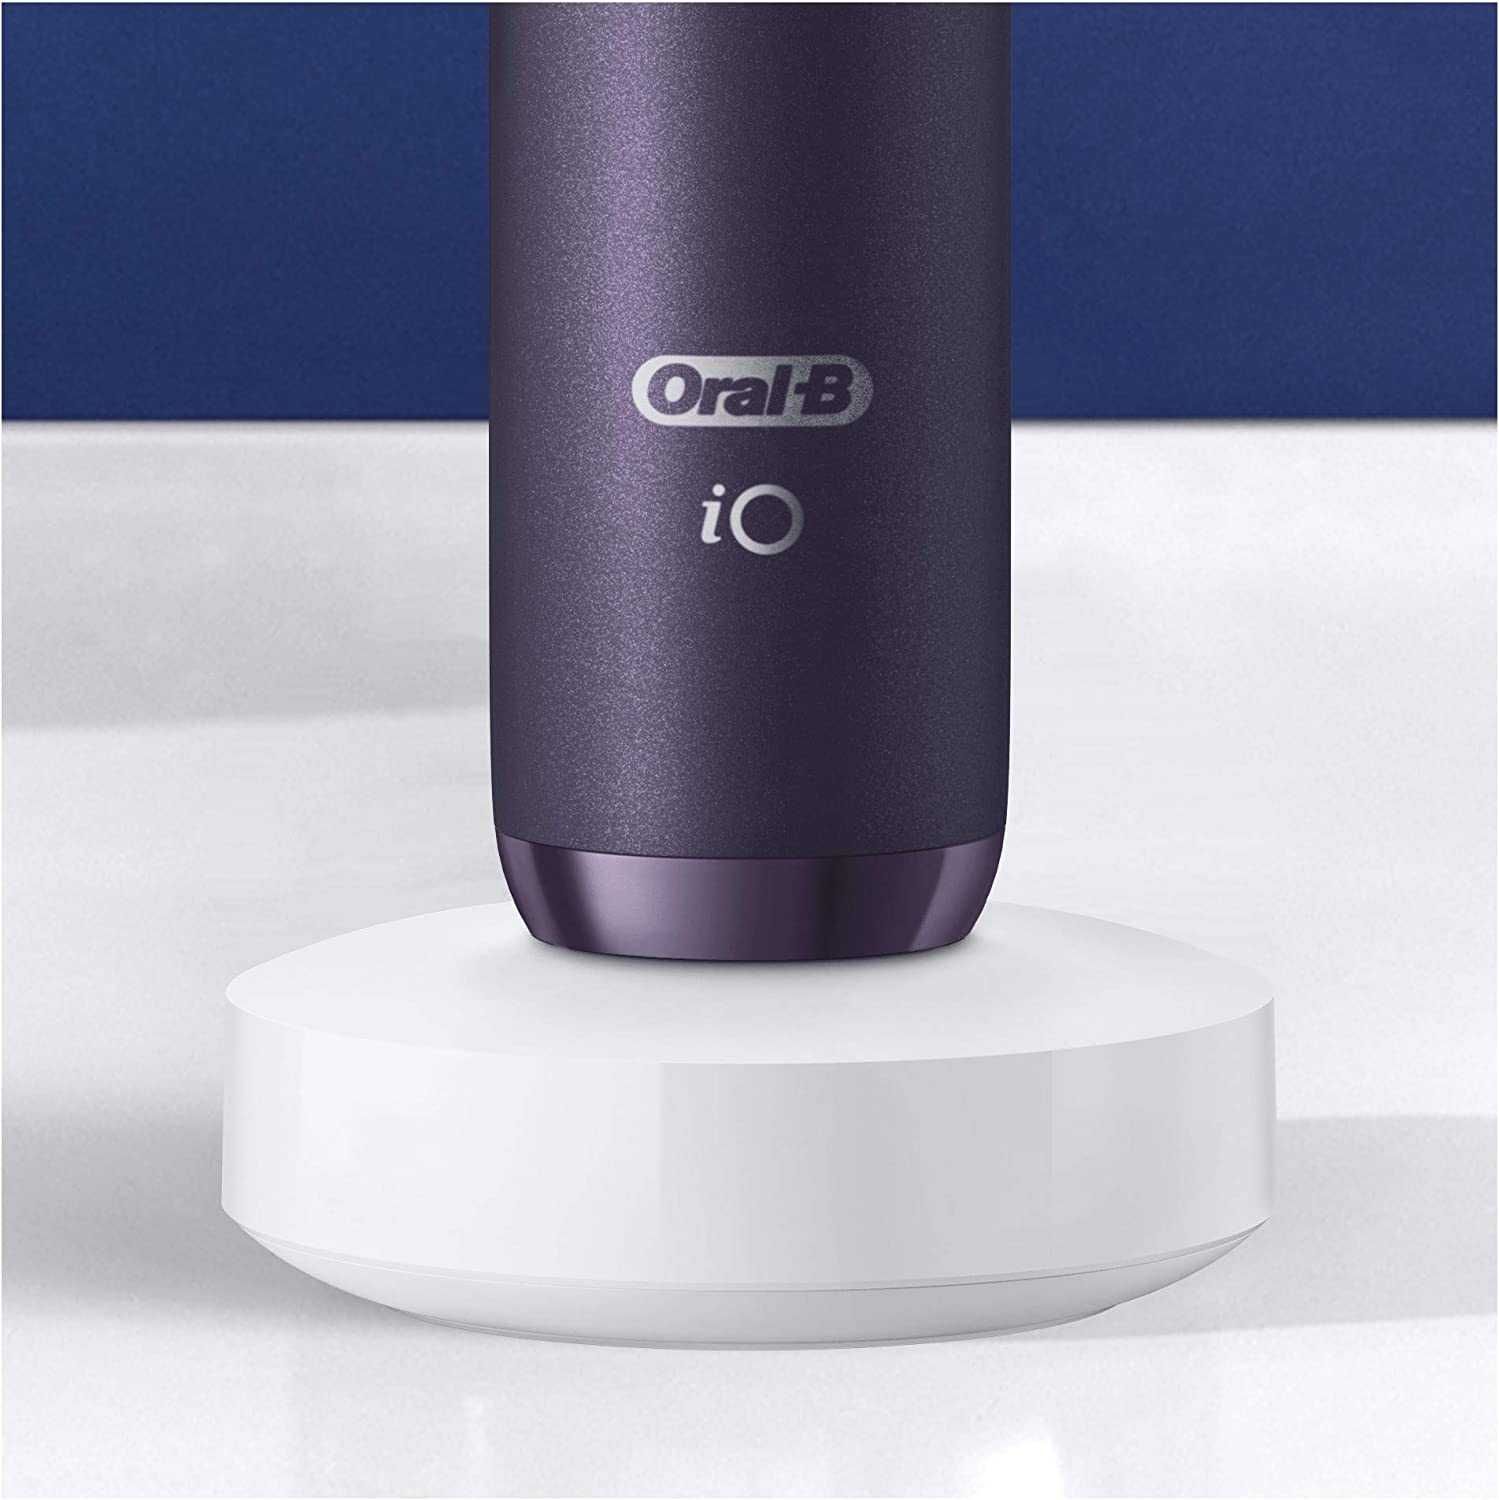 електричні зубні щітки набір Oral-B з 2 iO 8 фіолетовий/чорний